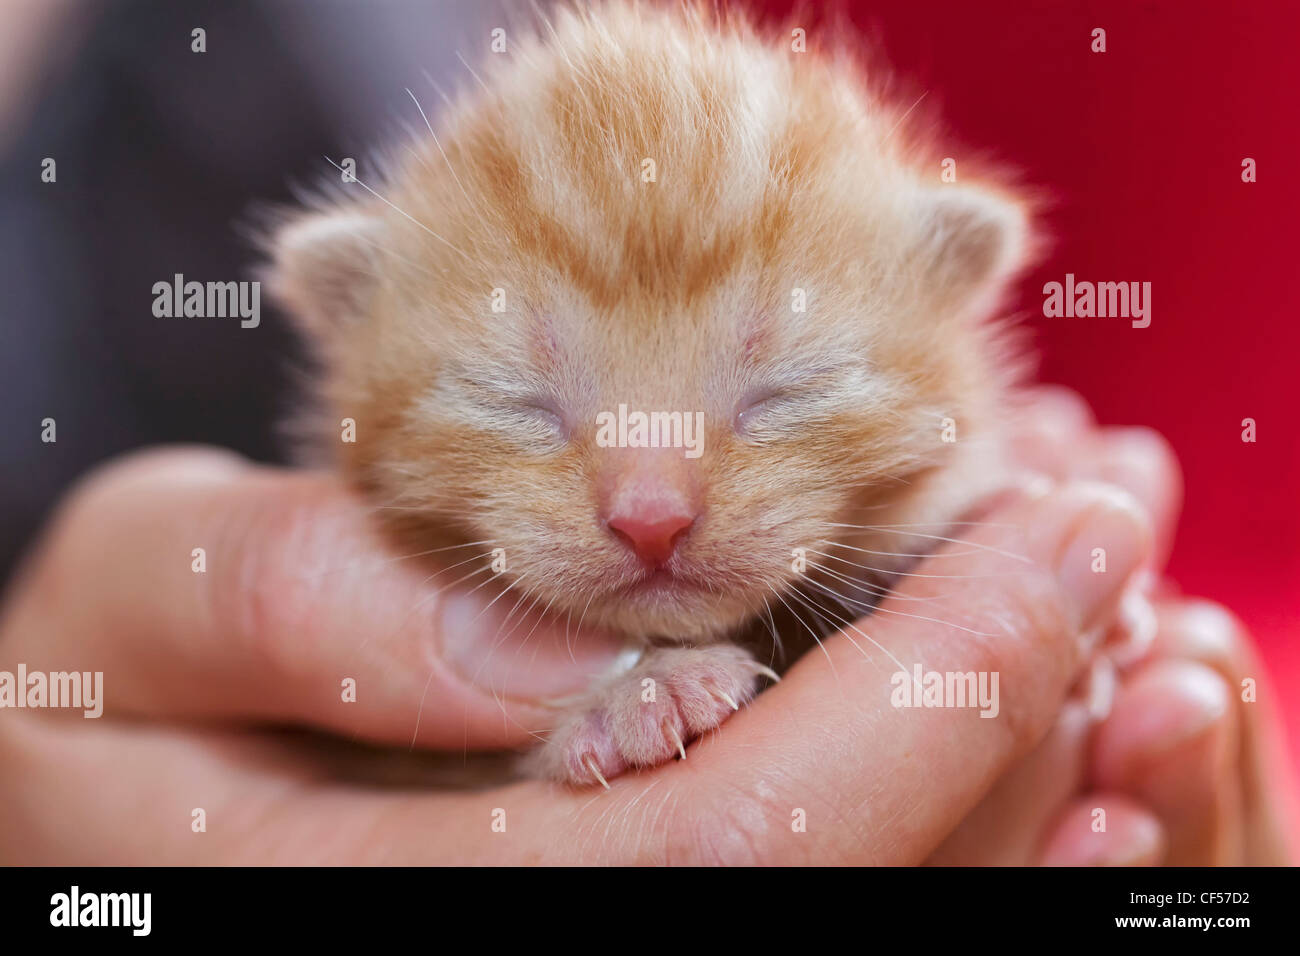 Germany, Mature woman holding newborn kitten, close up Stock Photo